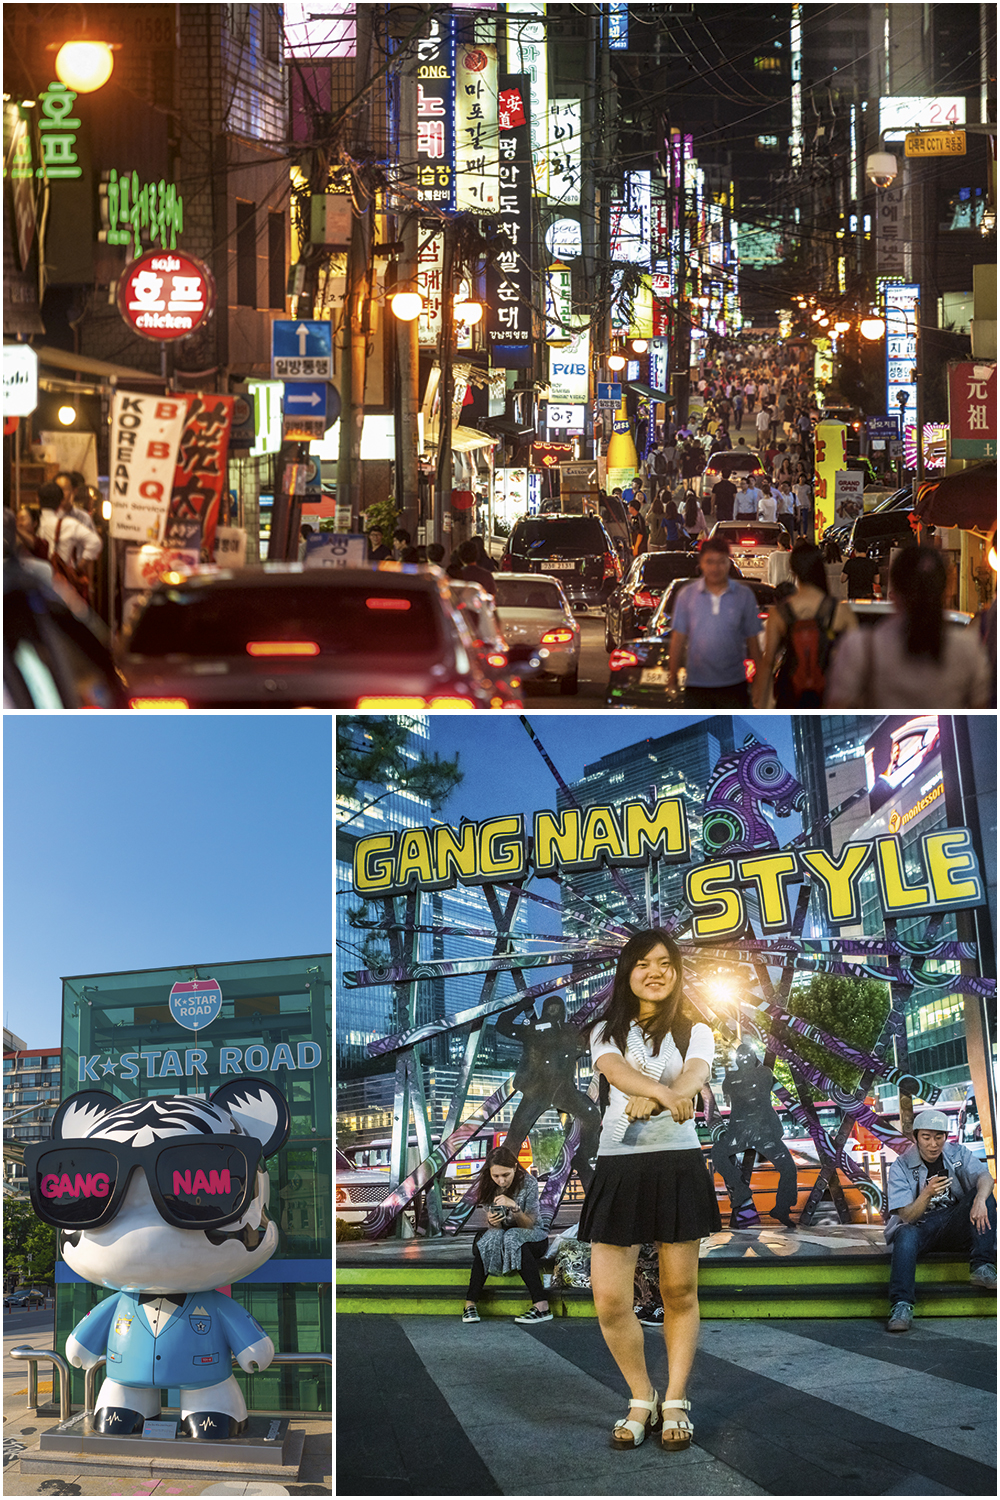 POLO CULTURAL - O agito noturno em Gangnam (acima) e imagens do apelo pop do bairro: de terreno baldio a tema de hit -